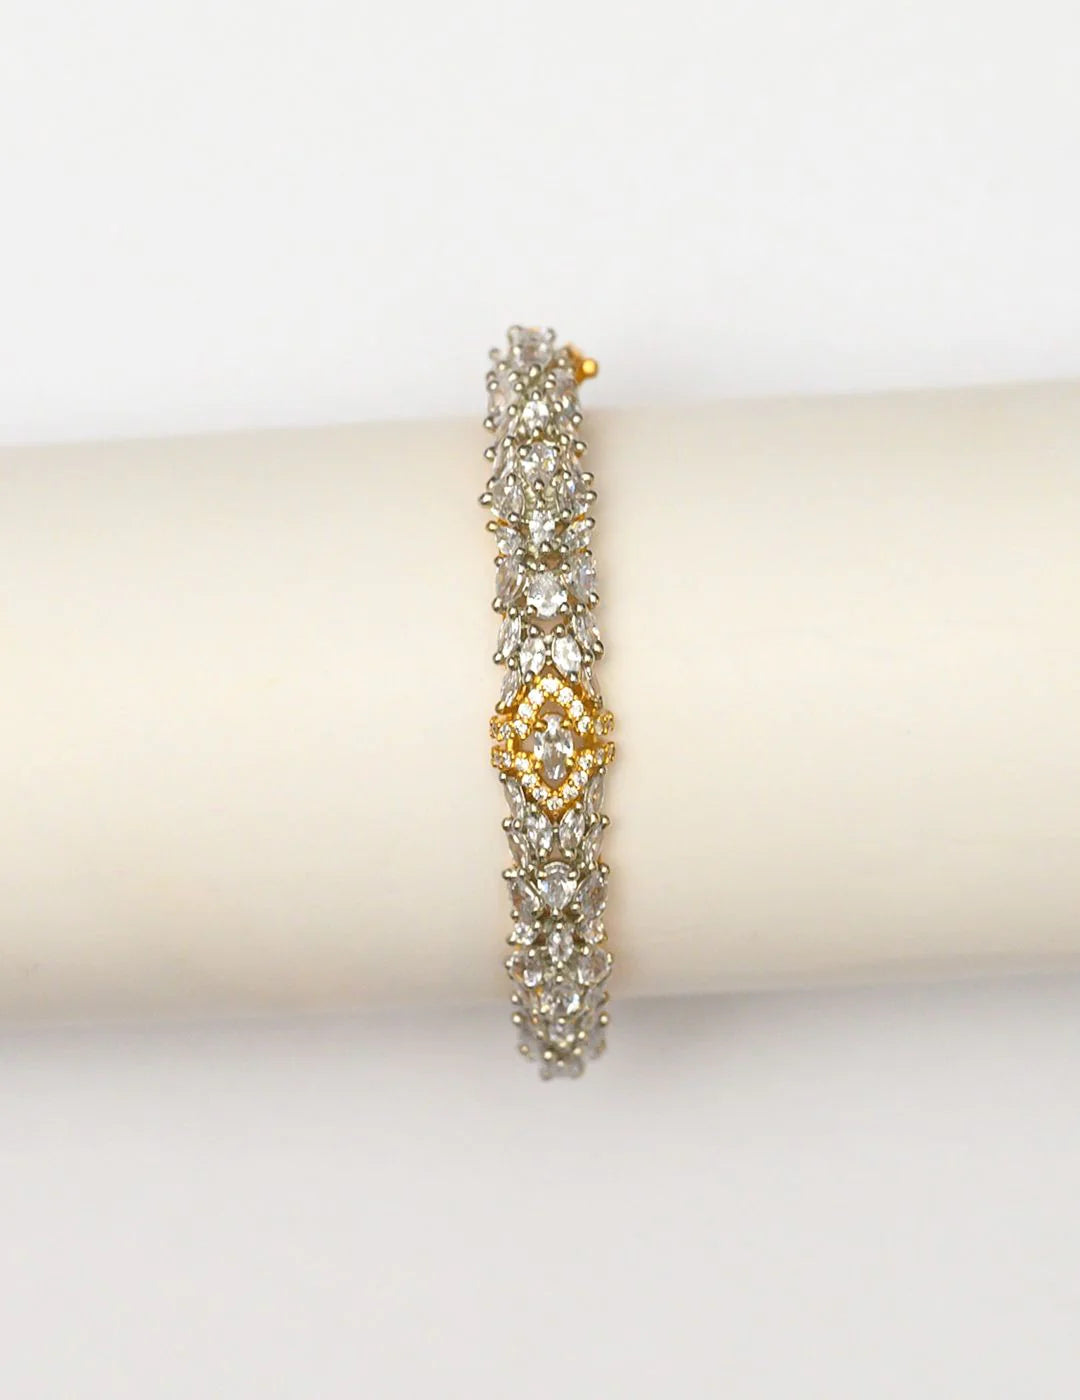 Silver Diamond Women's Bracelet